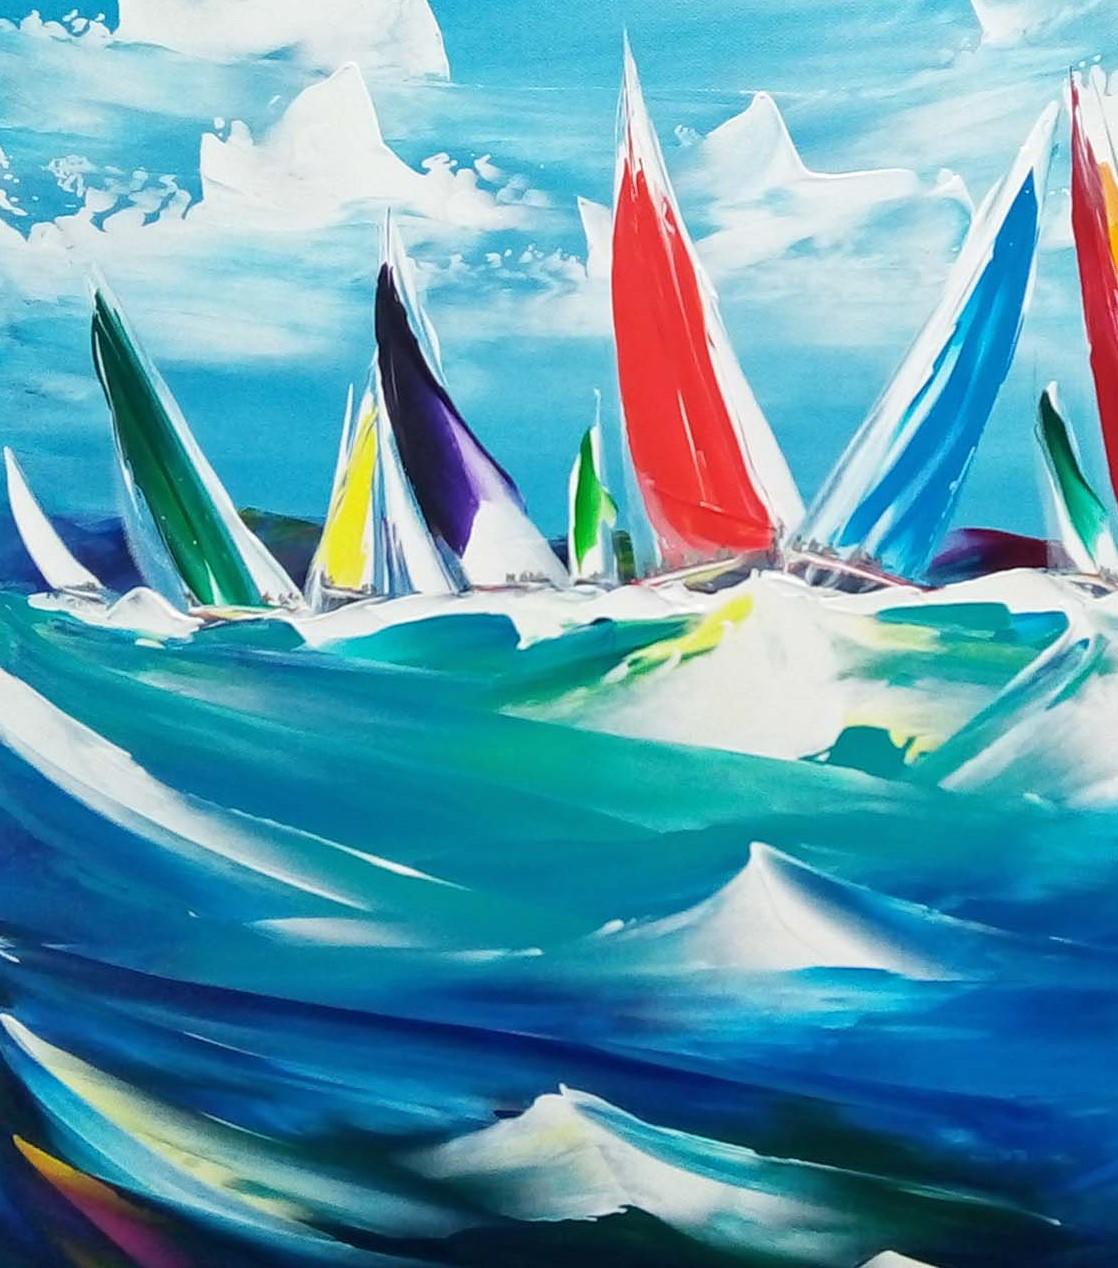 Original - Acrylique sur toile

Paysage marin contemporain coloré mettant en scène les ventes de bateaux dans le vent, parfait pour ajouter une touche de couleur à tout espace.

Cette pièce est magnifiquement encadrée dans un large cadre en bois